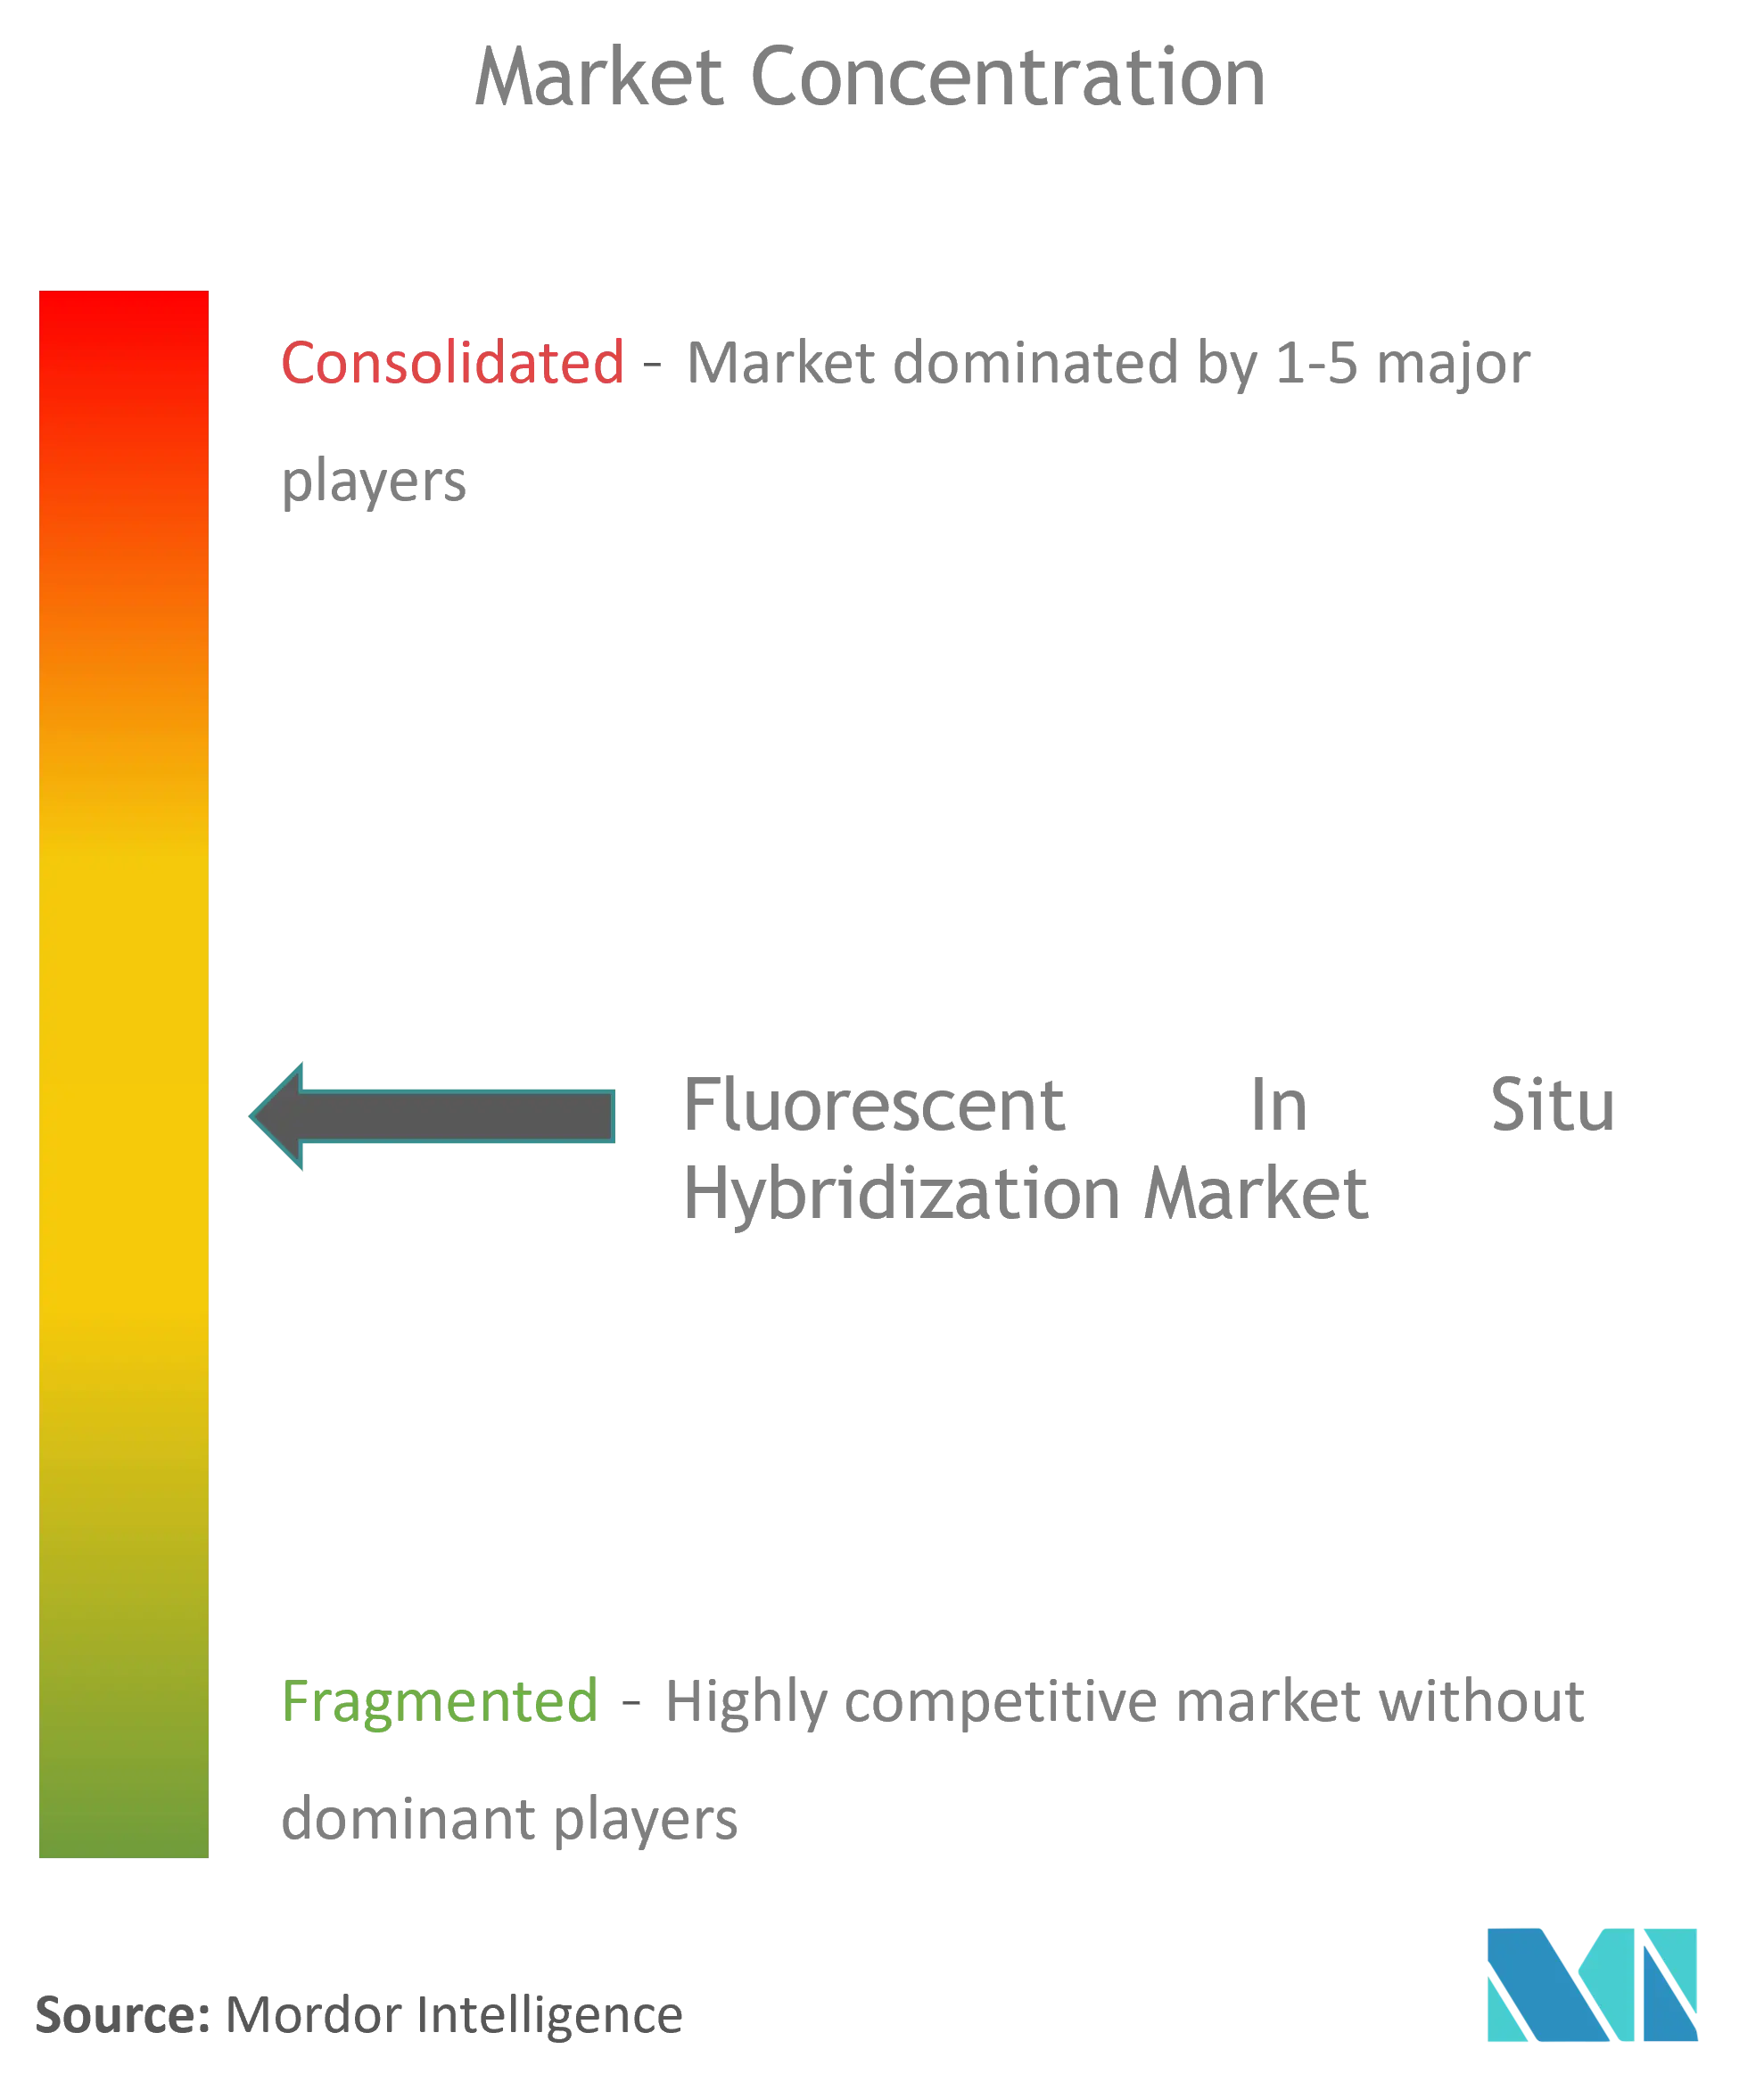 Concentration du marché de lhybridation fluorescente in situ